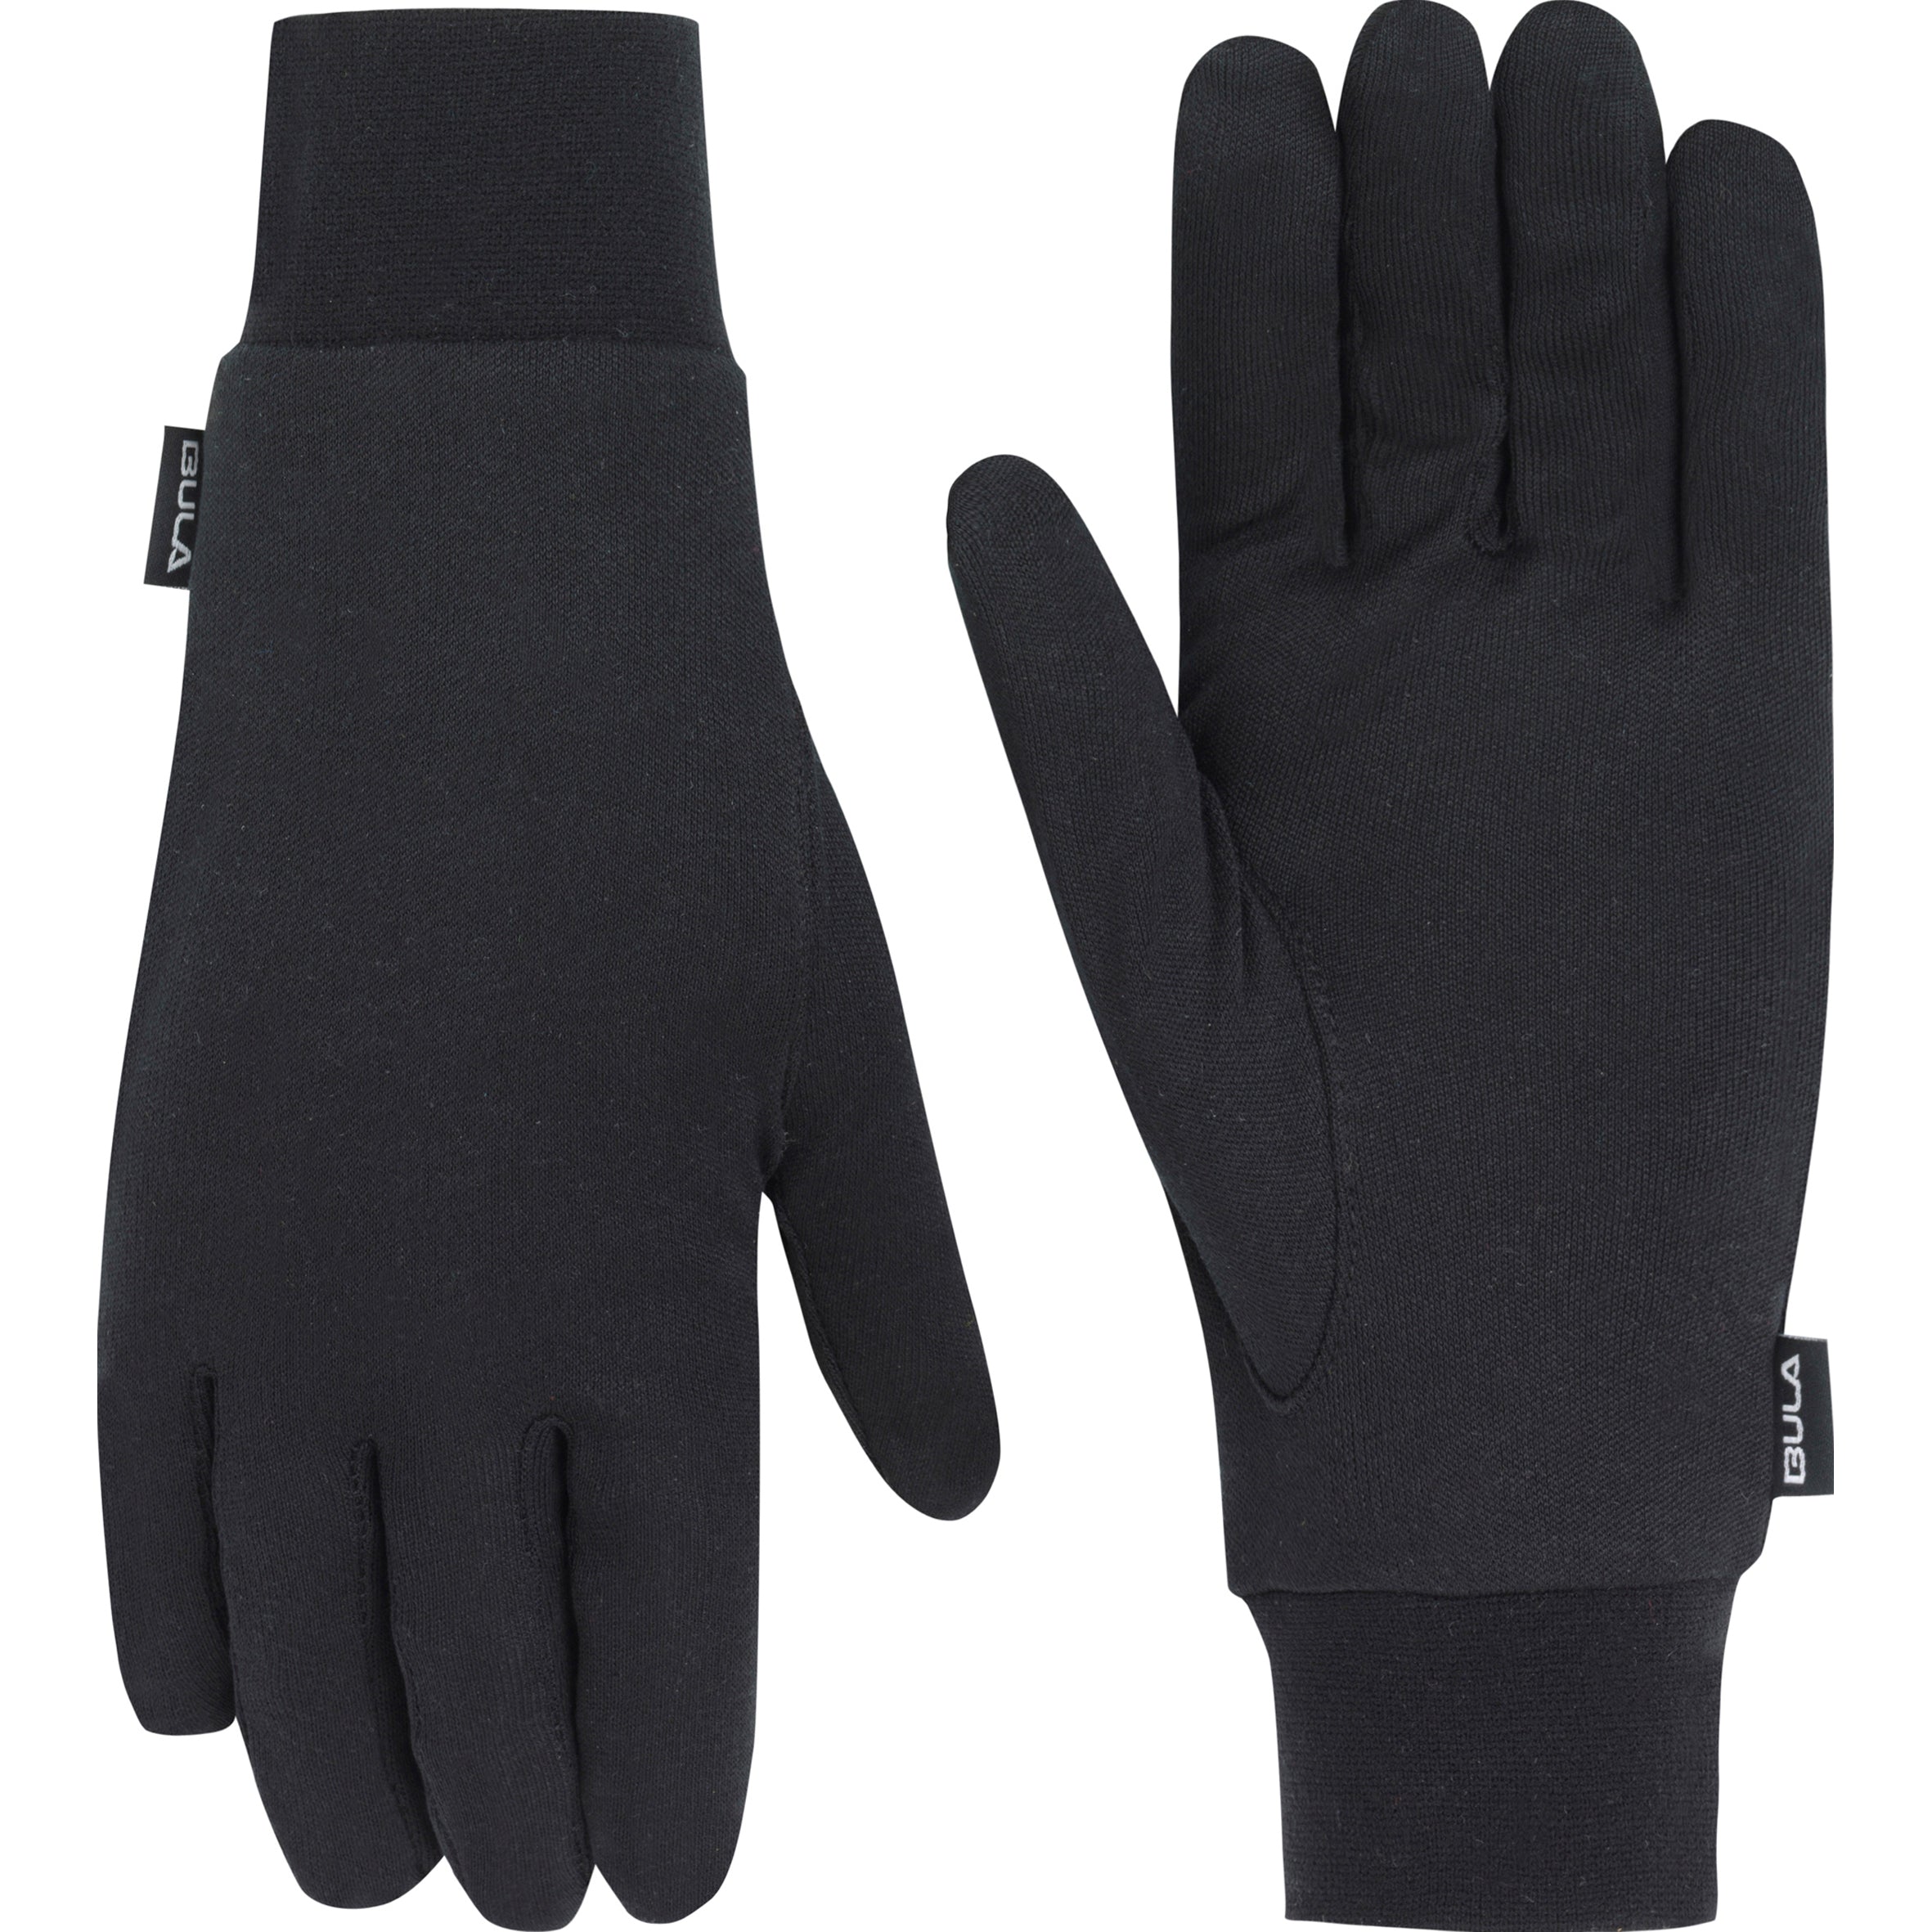 Bula Wool Glove Liner Handsker Tilbud: 149,00 DKK - Lemvig Indkøbsforening